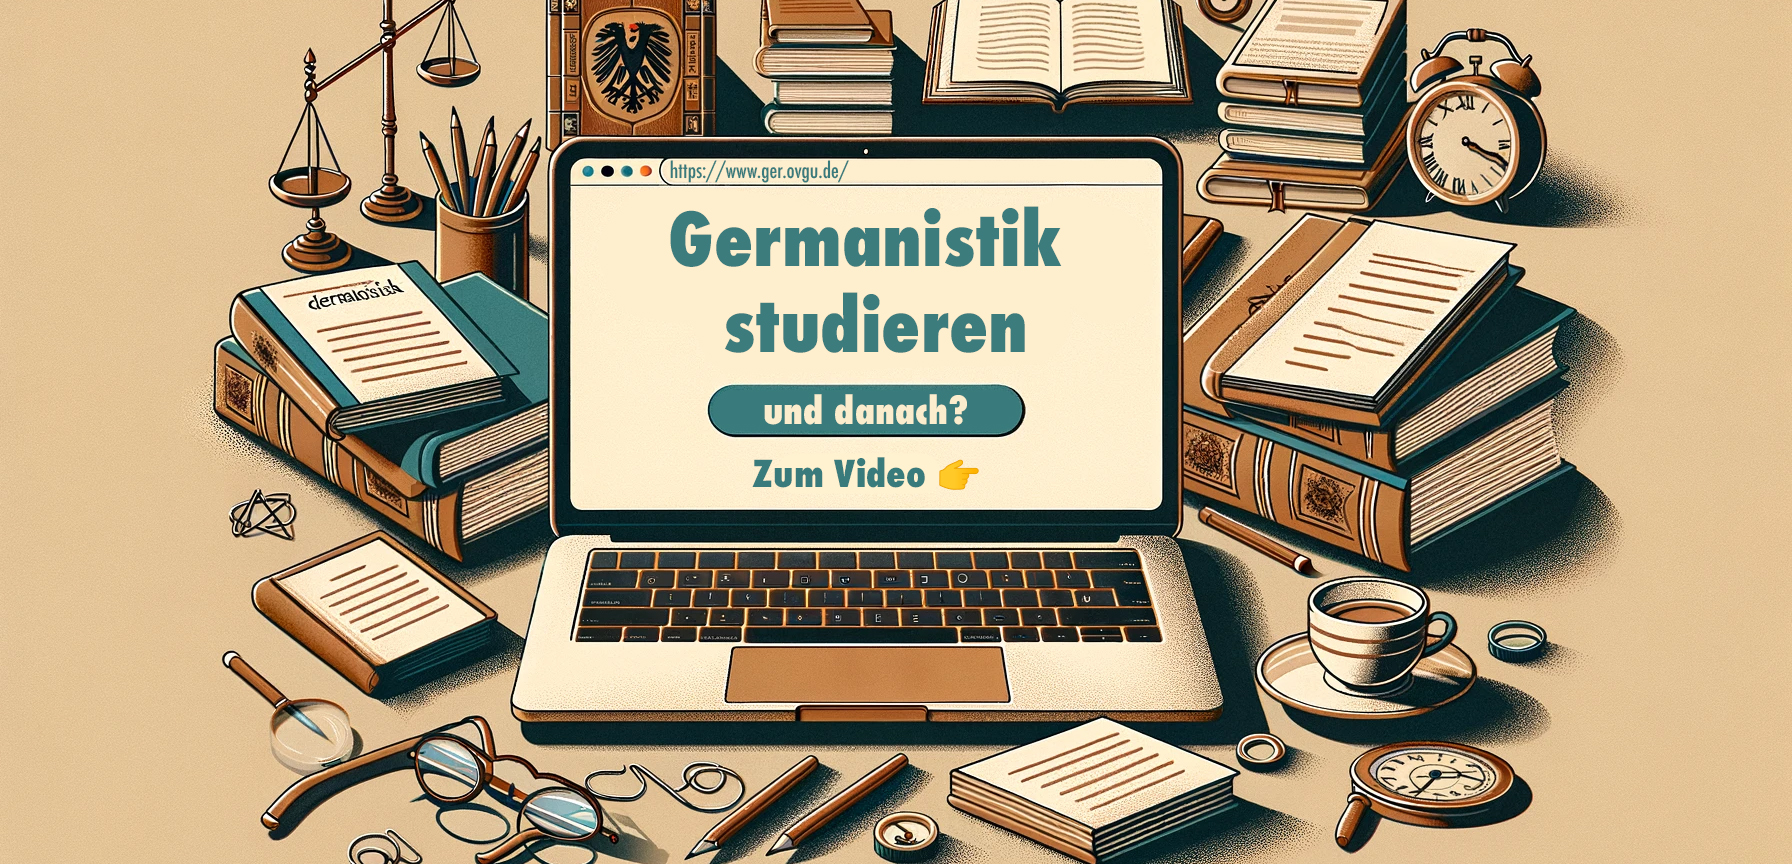 Germanistik studieren - und danach?